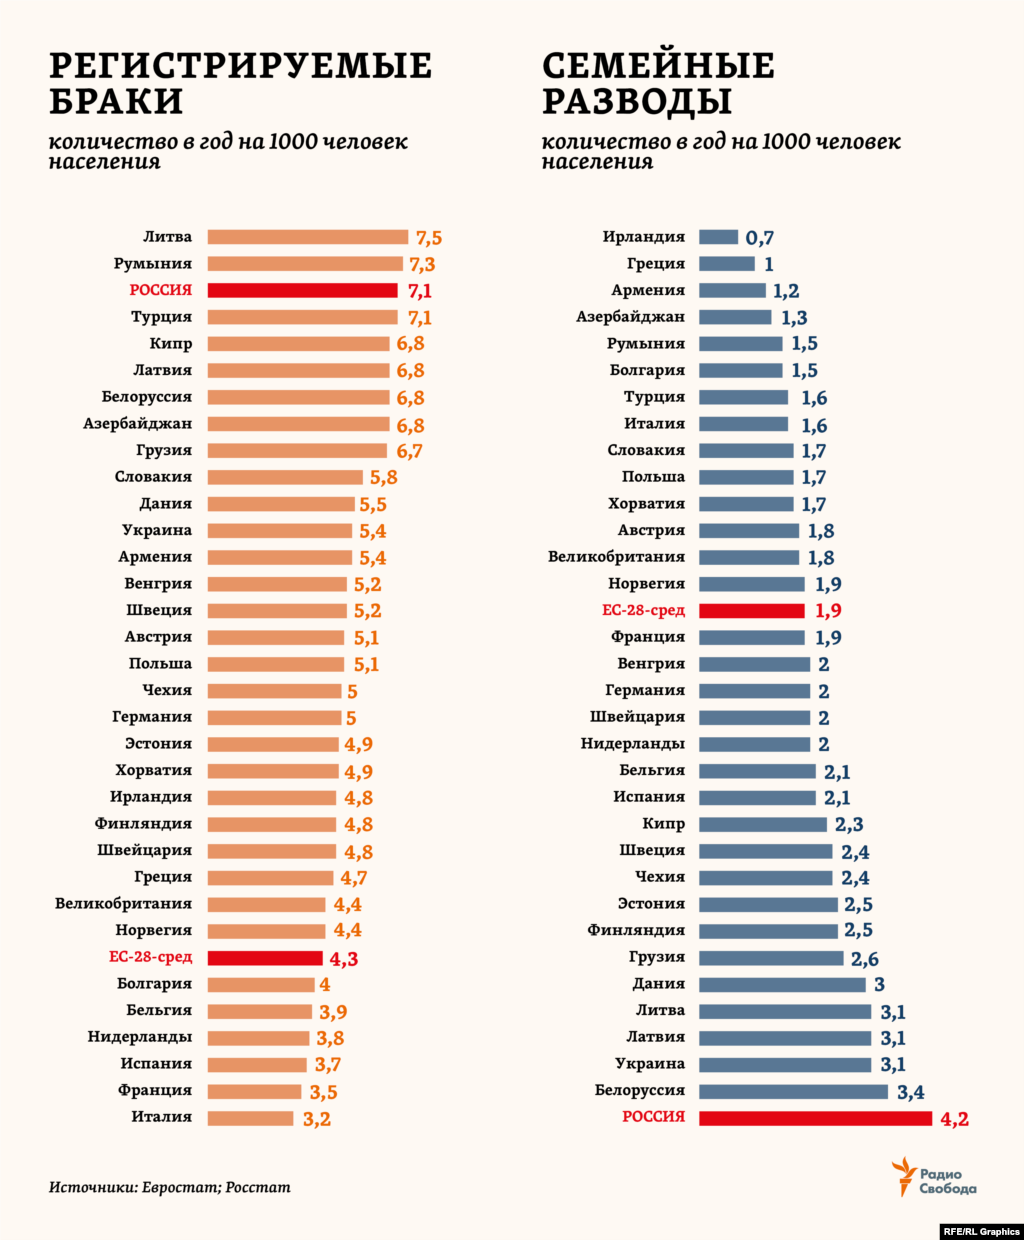 Самый большой перевес женского населения над мужским (+24,5 млн) &ndash; в Европе (ООН включает также в этот регион Россию, Украину, Белоруссию и Молдавию). Здесь за последние полвека количество регистрируемых браков сократилось почти 2 раза, а количество разводов, наоборот, возросло в 2,5 раза. В России, где, наоборот, на каждую тысячу мужчин приходится 1156 женщин (оценки Росстата за 2018 год), &ndash; один из самых высоких показателей по количеству браков. Но при этом и самый высокий, с большим отрывом от других стран региона &ndash; по разводам.